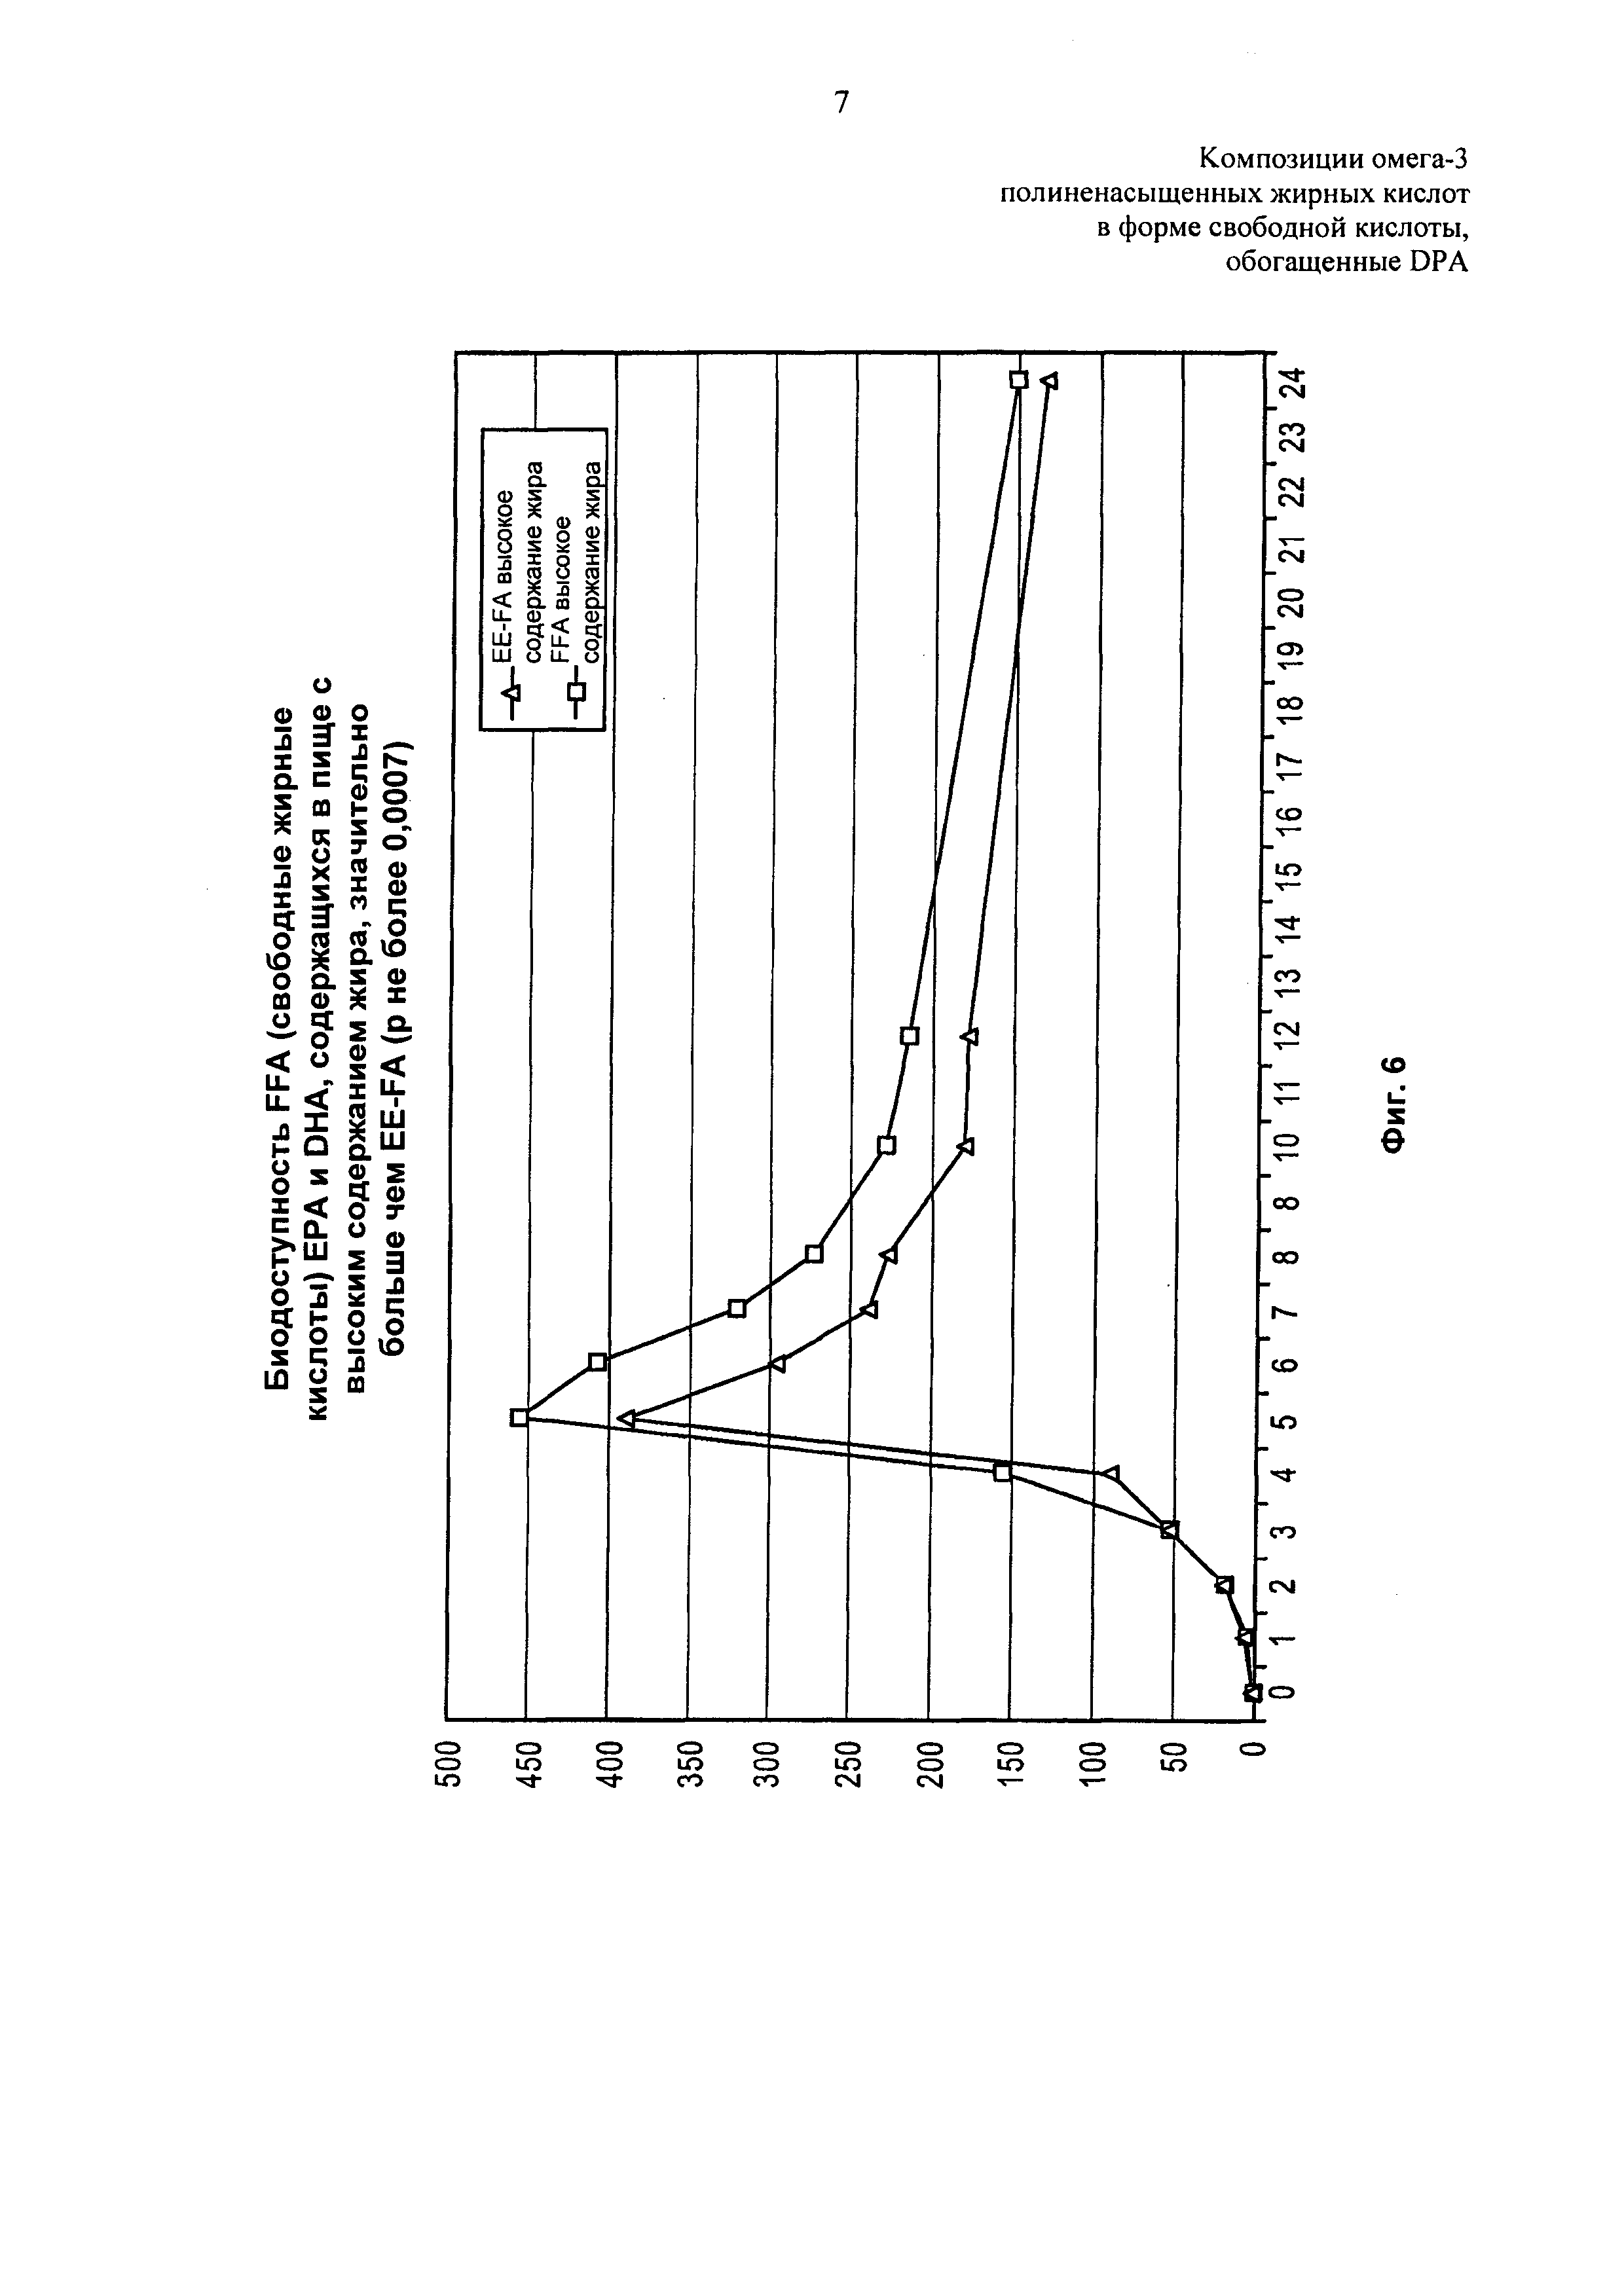 Композиции омега-3 полиненасыщенных жирных кислот в форме свободной кислоты, обогащенные DPA